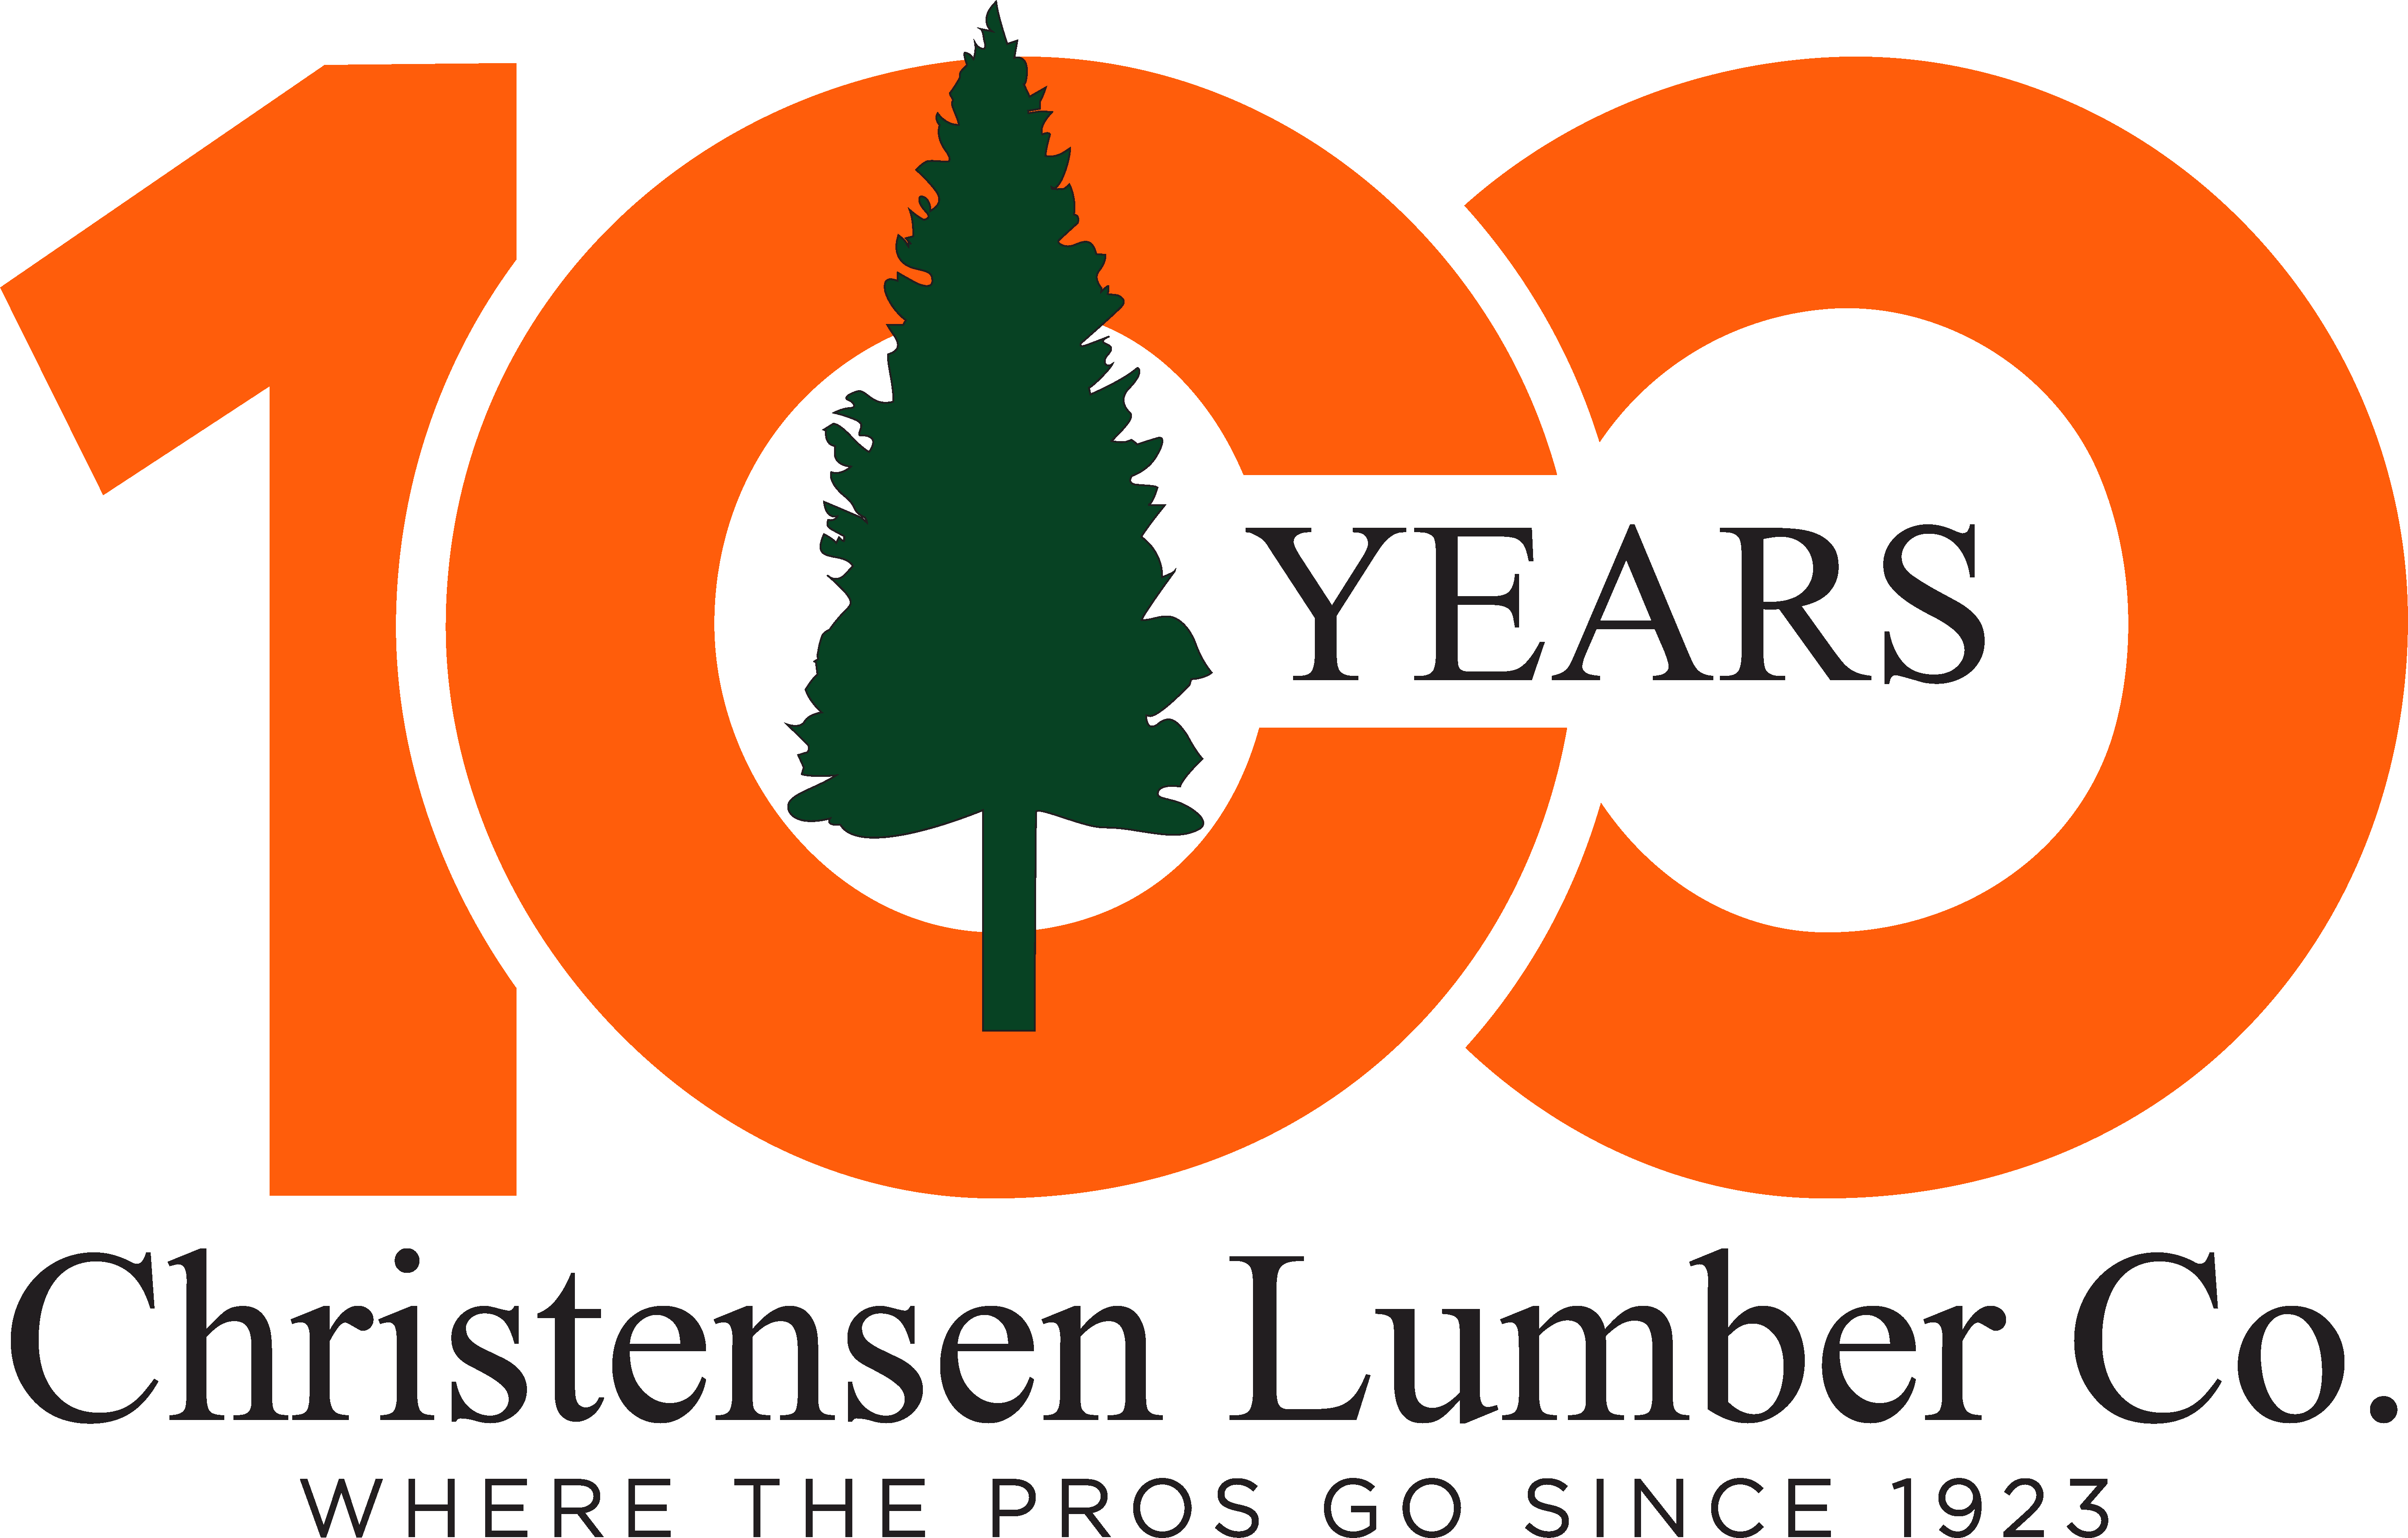 Christensen Lumber Logo for Client Testimonial